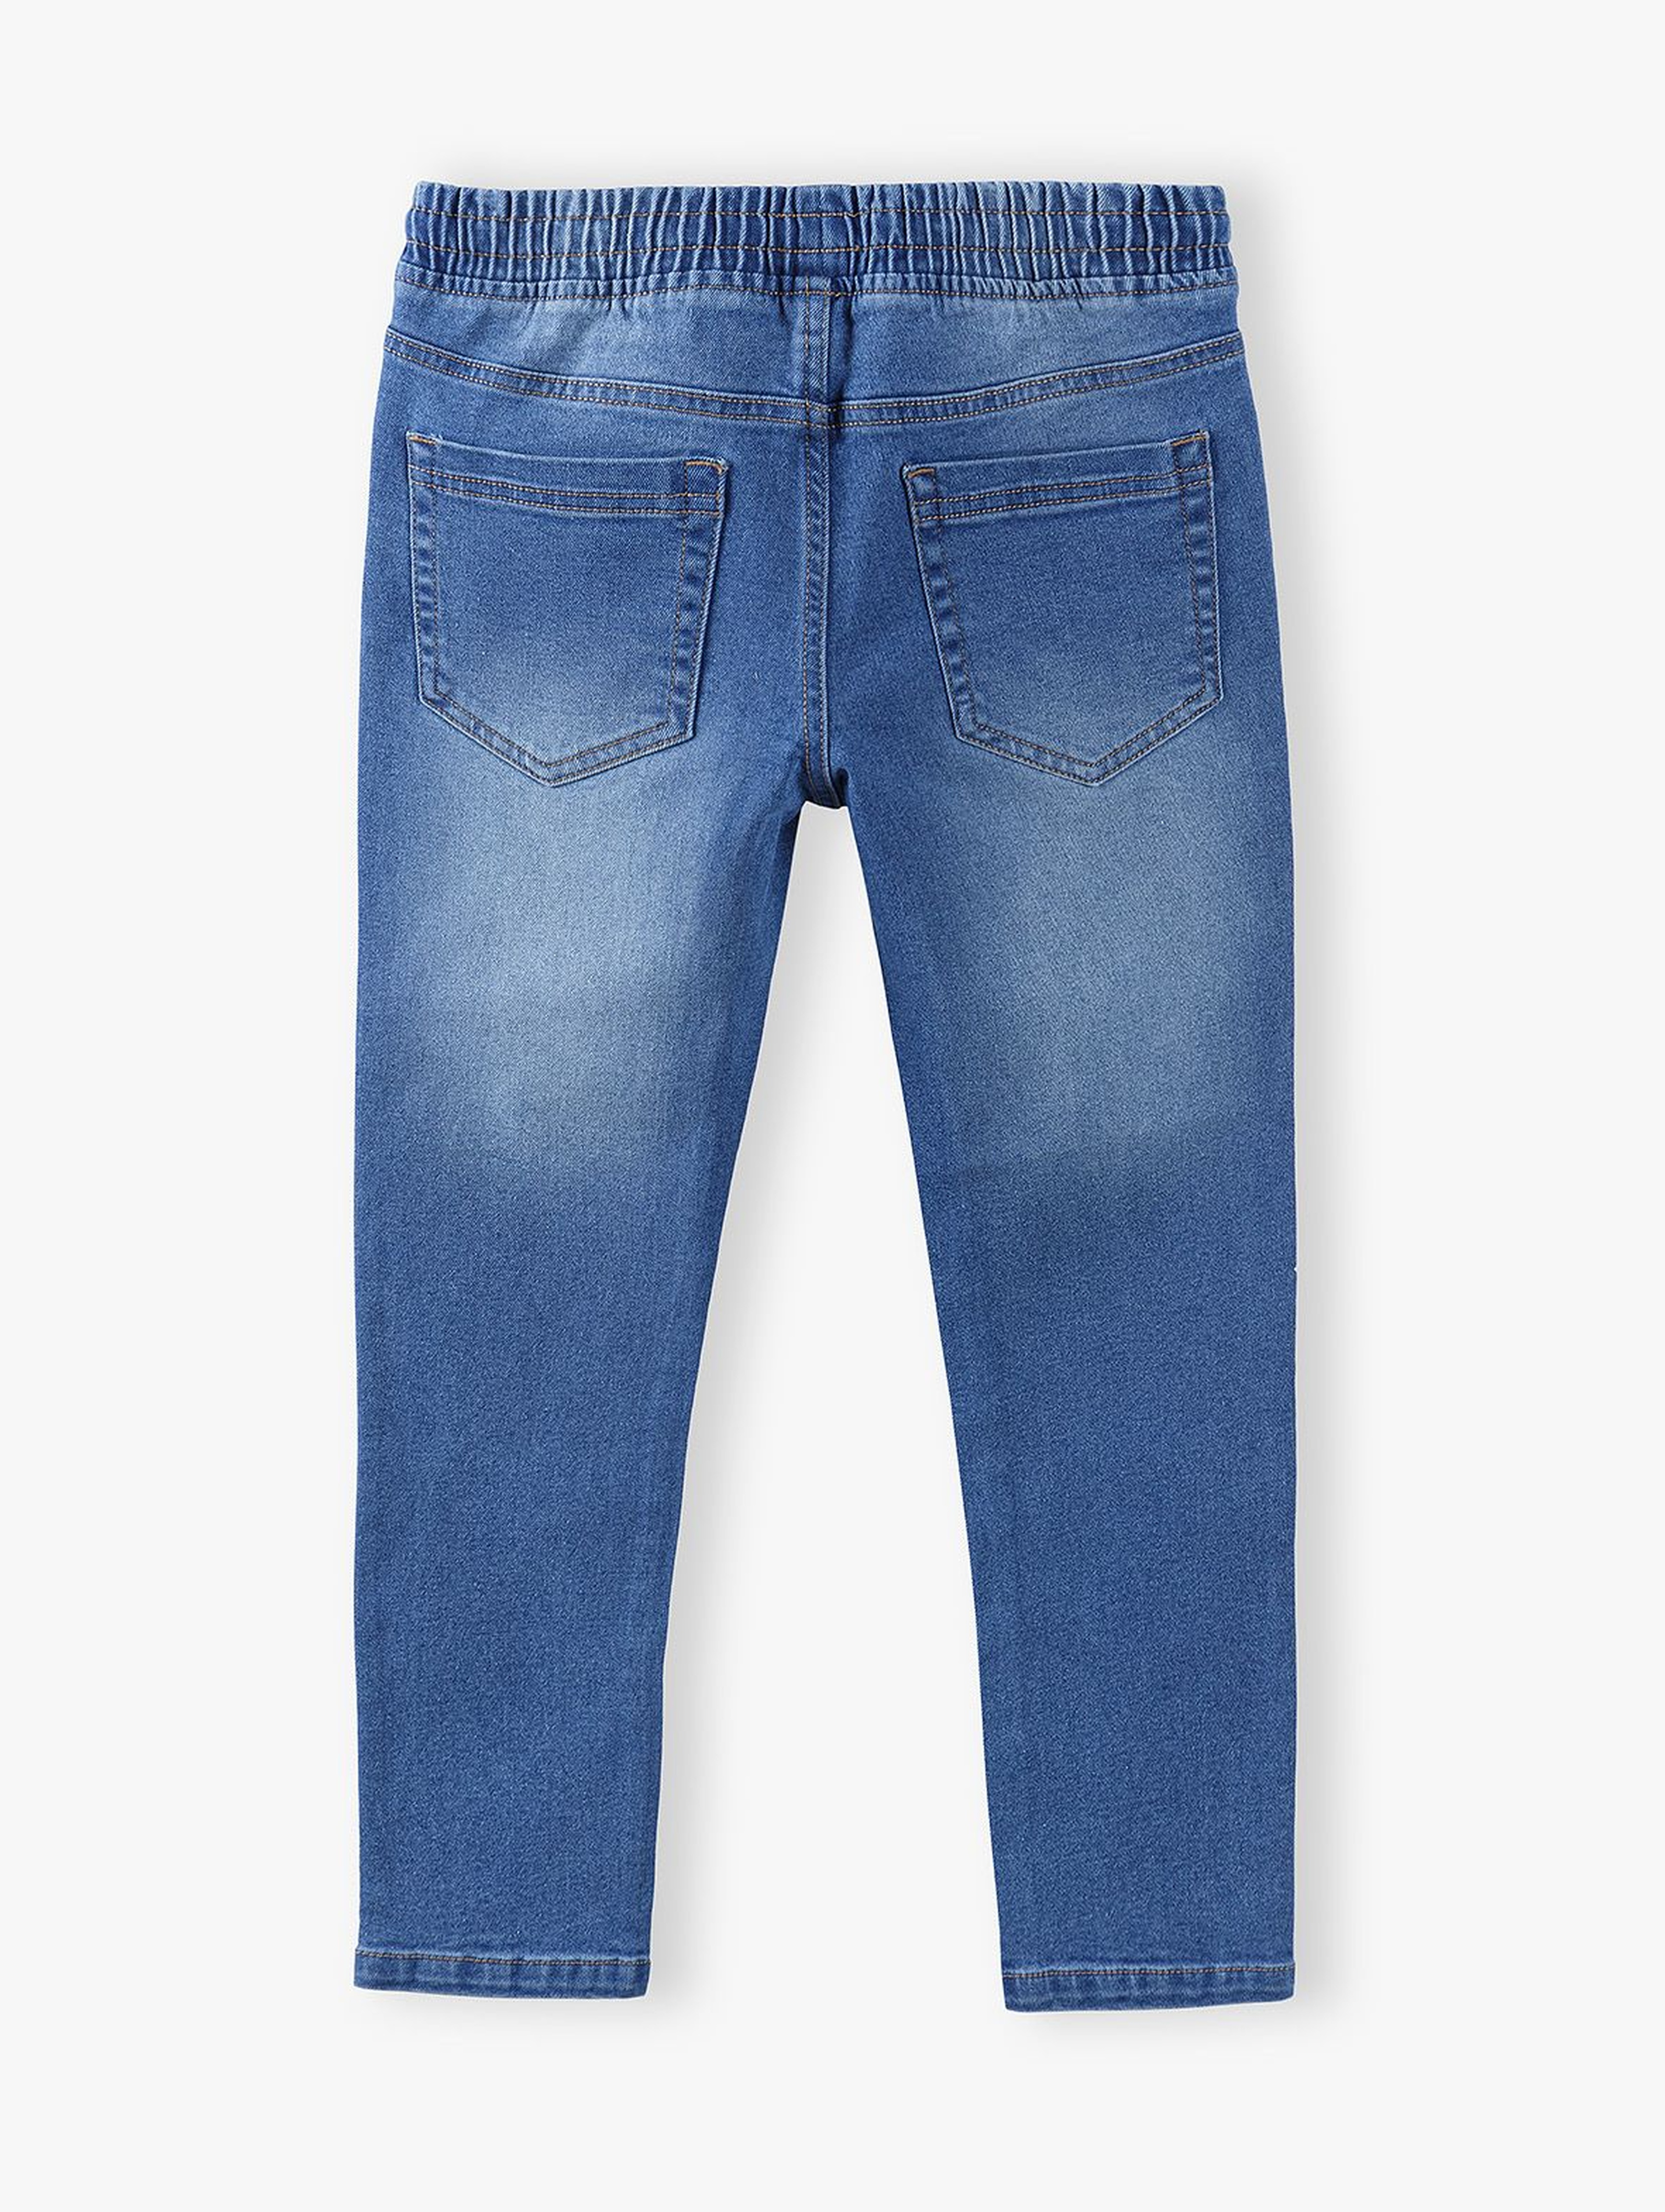 Spodnie chłopięce jeansowe z gumką w pasie- niebieskie